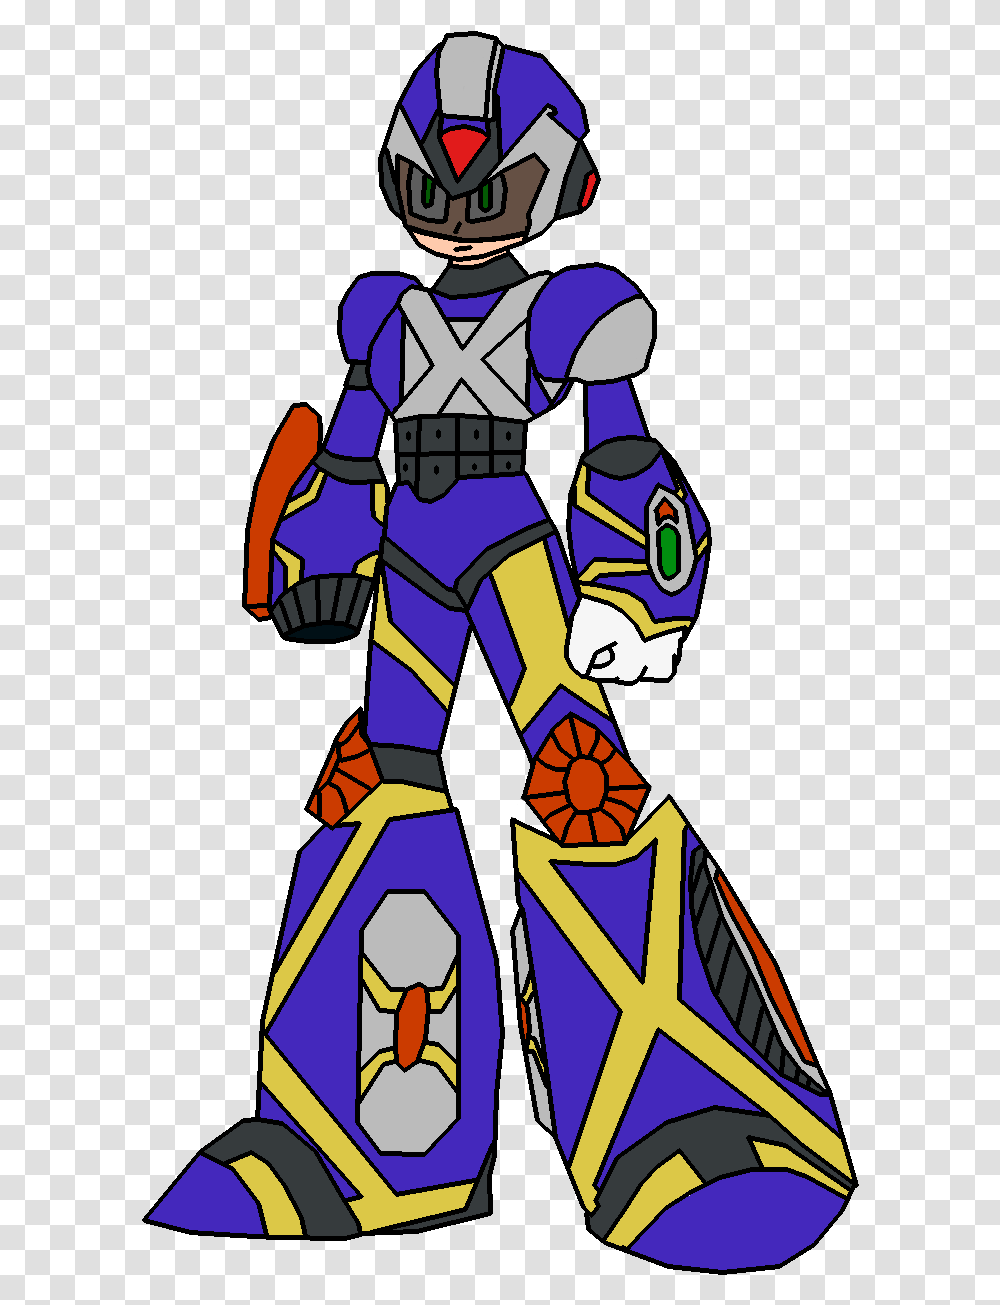 Mega Man X S Riot Armor Cartoon, Fireman, Knight, Costume Transparent Png